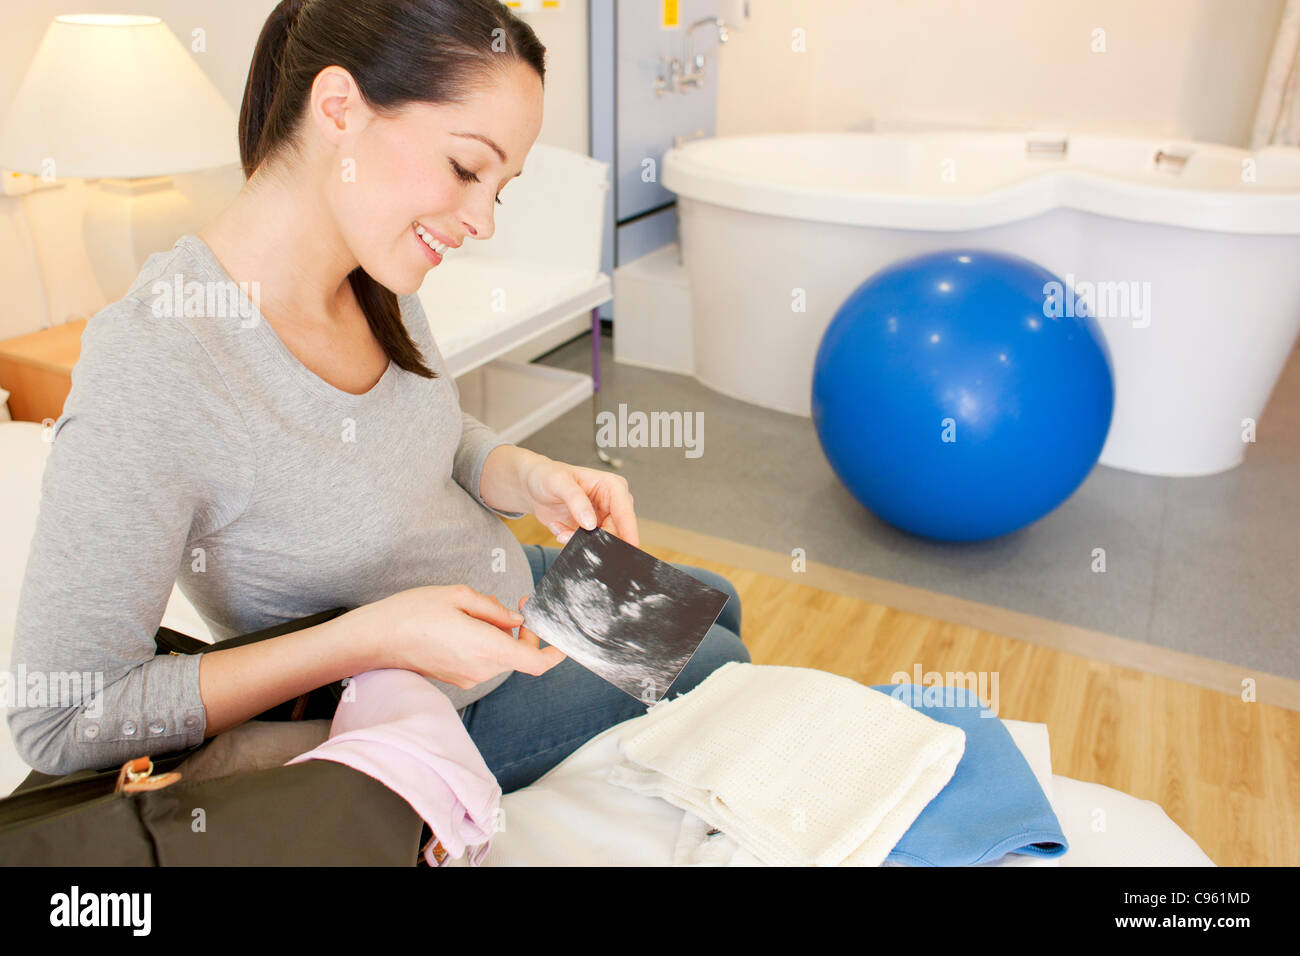 Hausgeburt. Schwangere Frau in ihrem Zimmer bei einer Hausgeburt Auspacken. Stockfoto